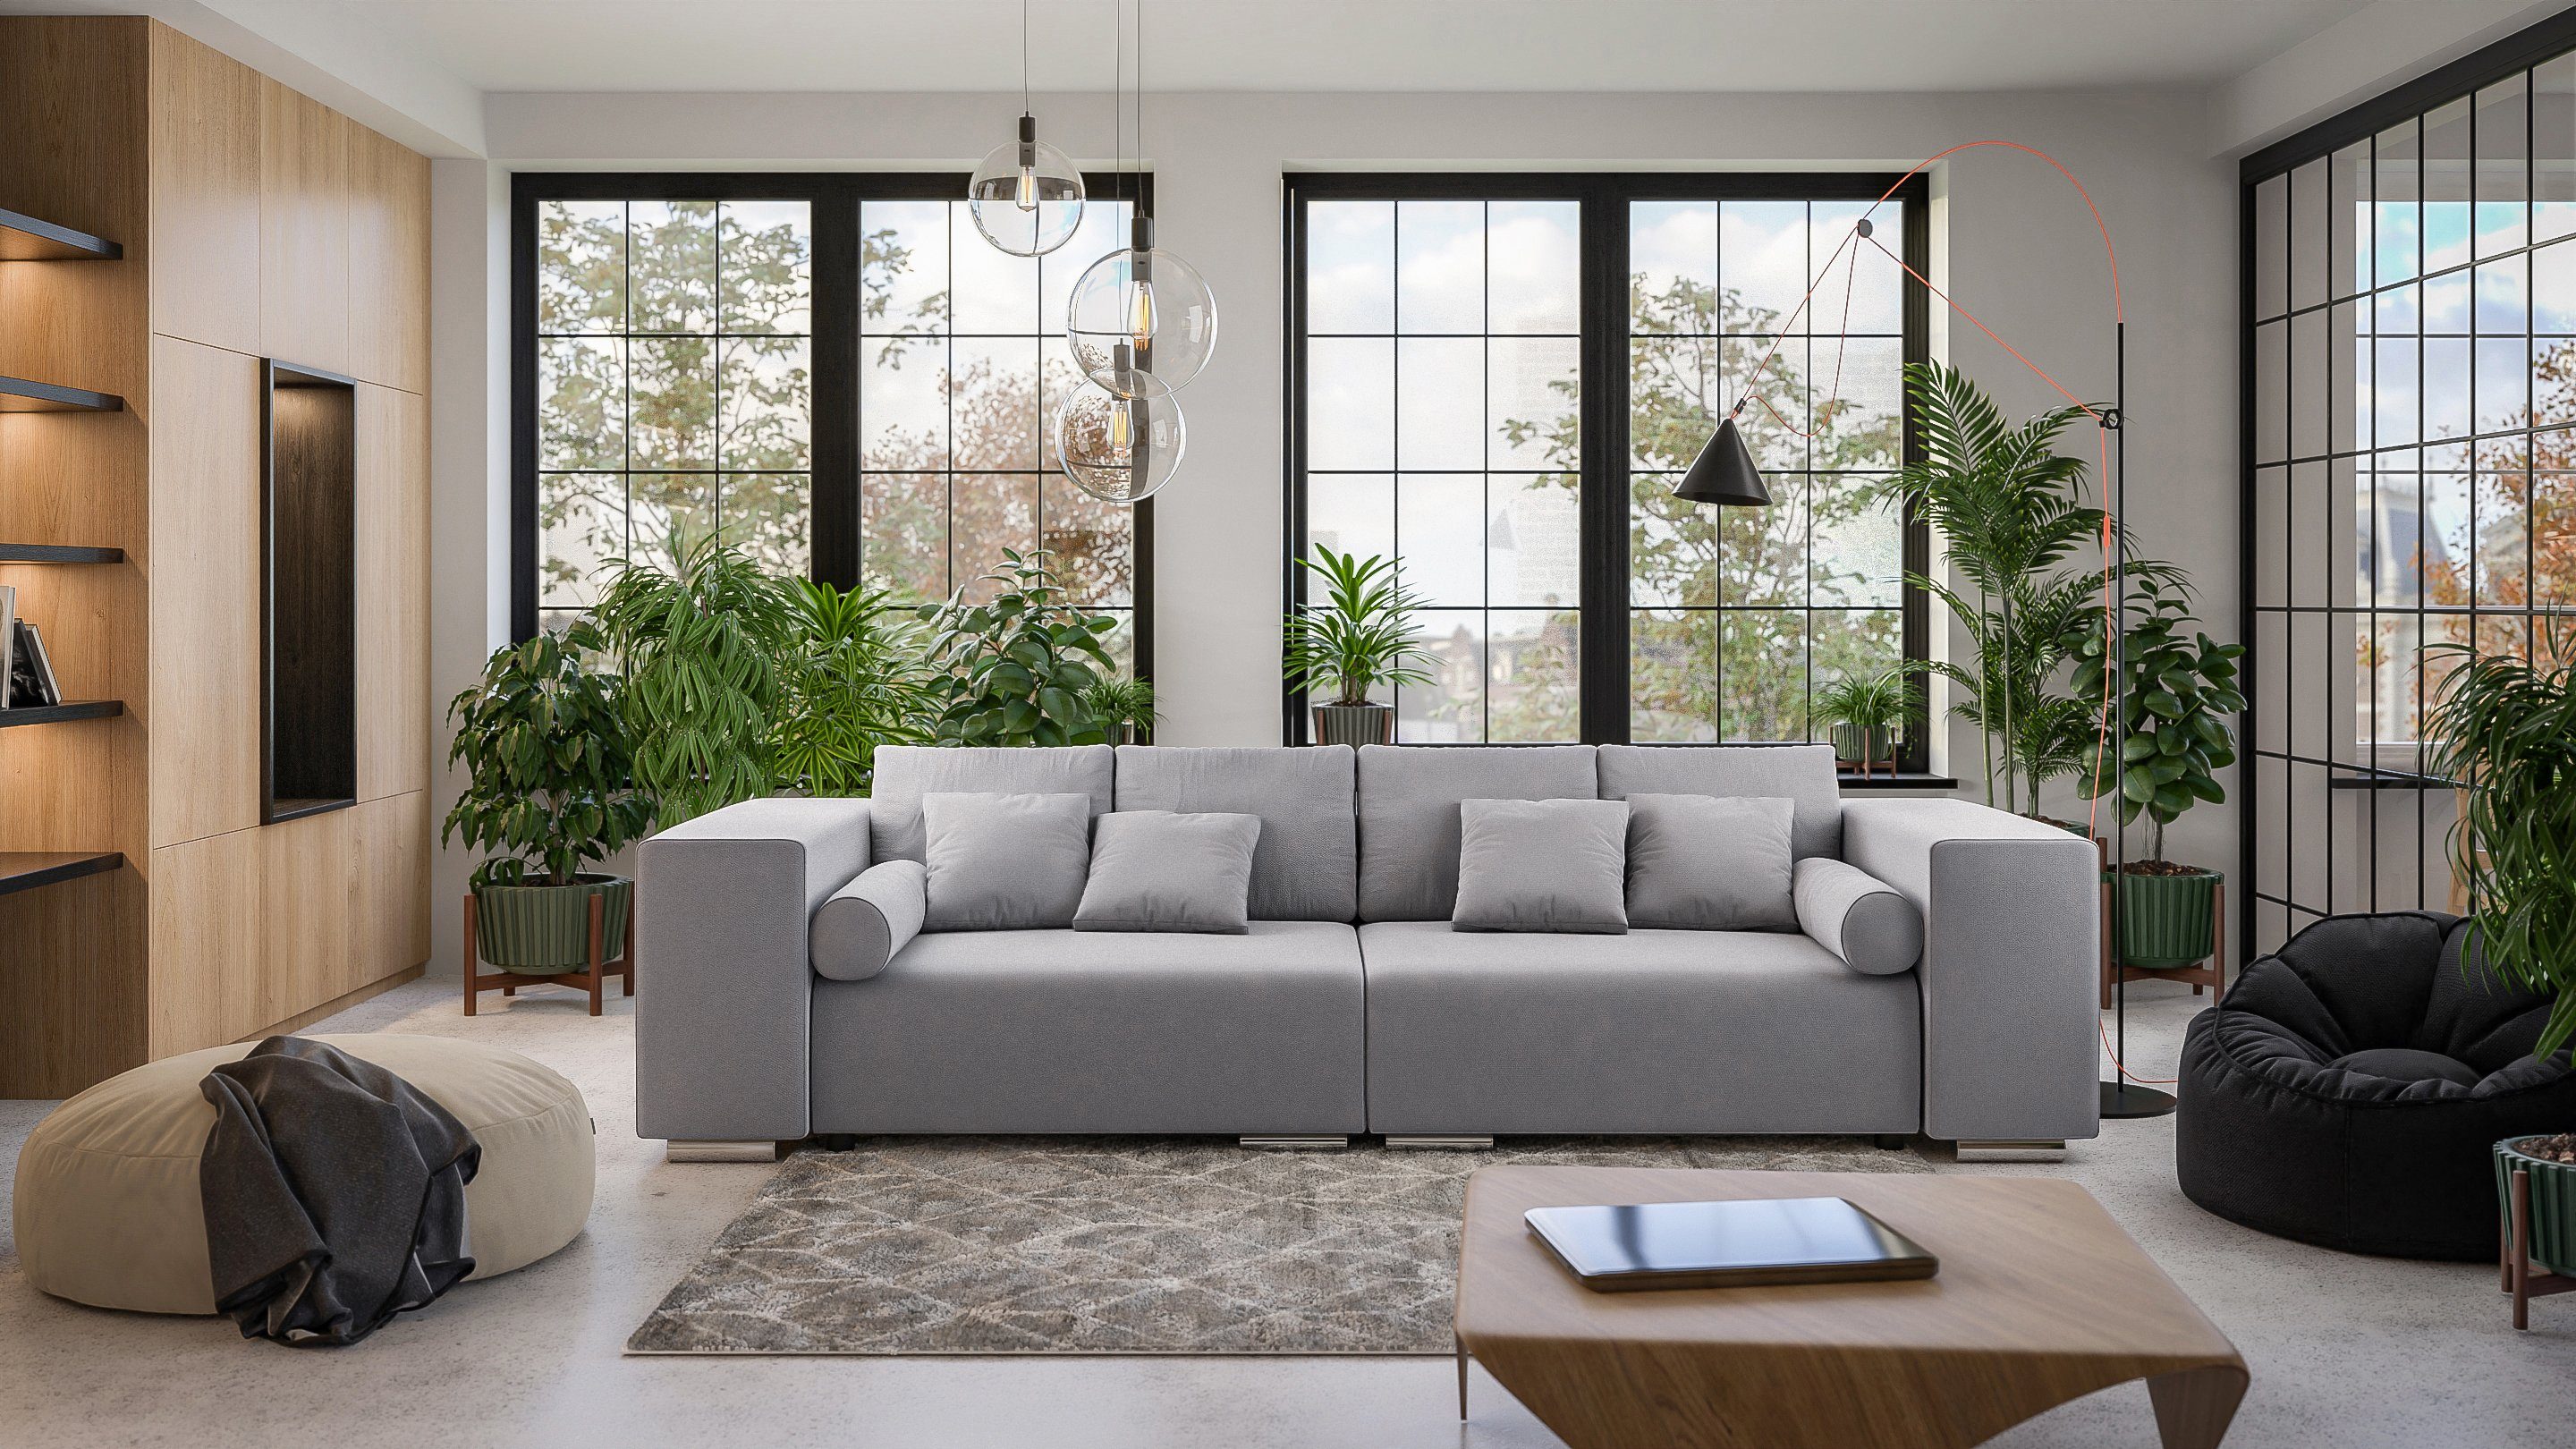 Big-Sofa Cork S-Style Möbel Wellenfederung 5-Sitzer mit mit Schlaffunktion, Grau